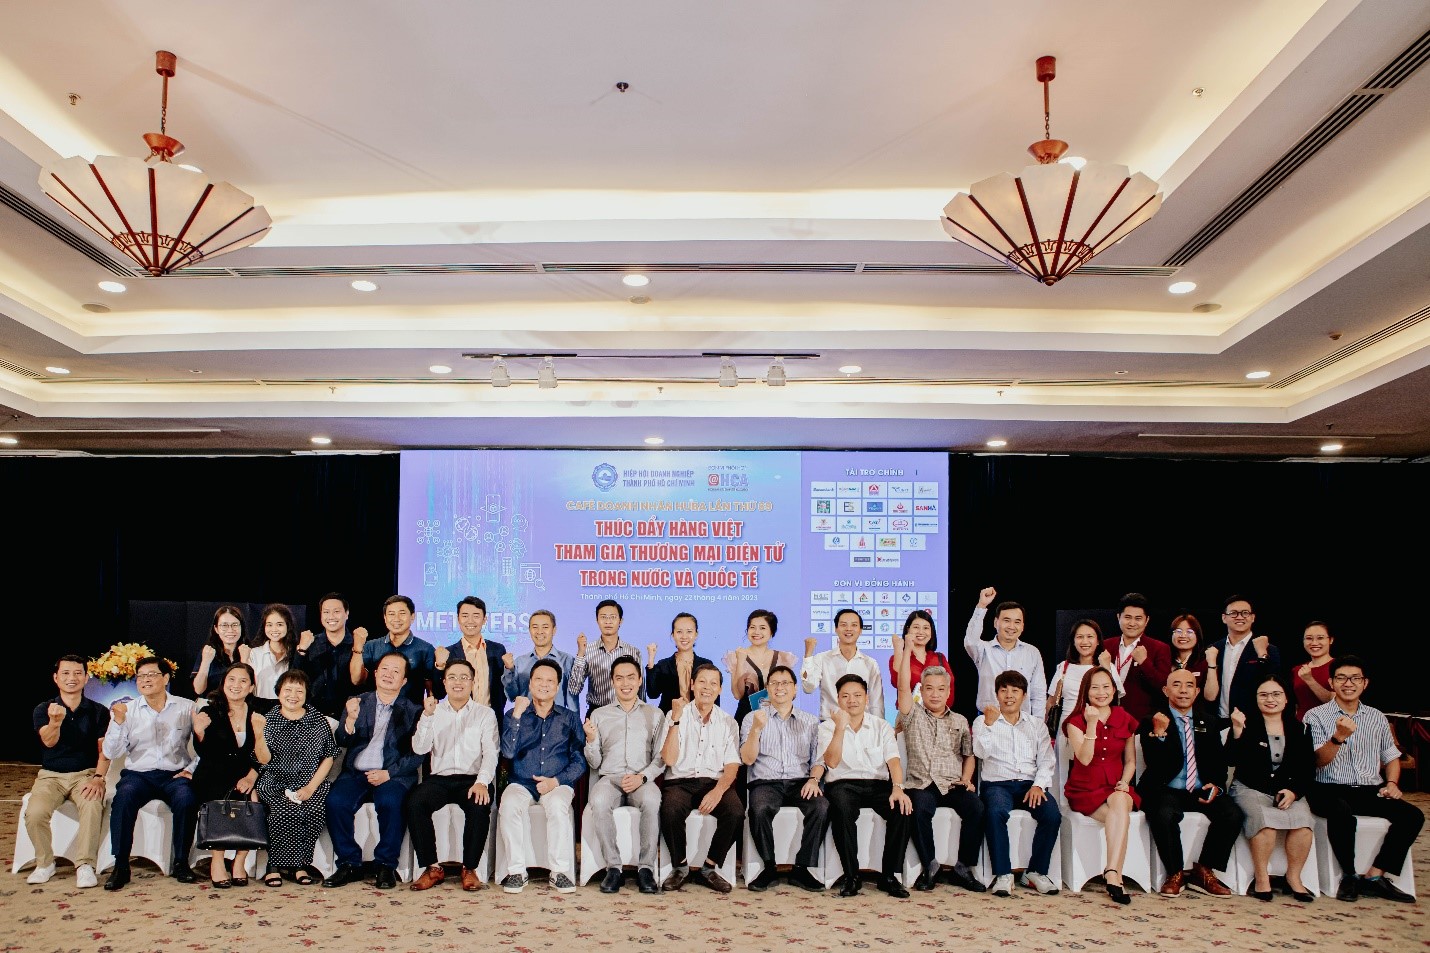 Vì sao doanh nghiệp Việt chưa khai thác hiệu quả thương mại điện tử? Chương trình “ Café doanh nhân Huba lần thứ 69” - Thúc đẩy hàng Việt tham gia thương mại điện tử trong nước và quốc tế